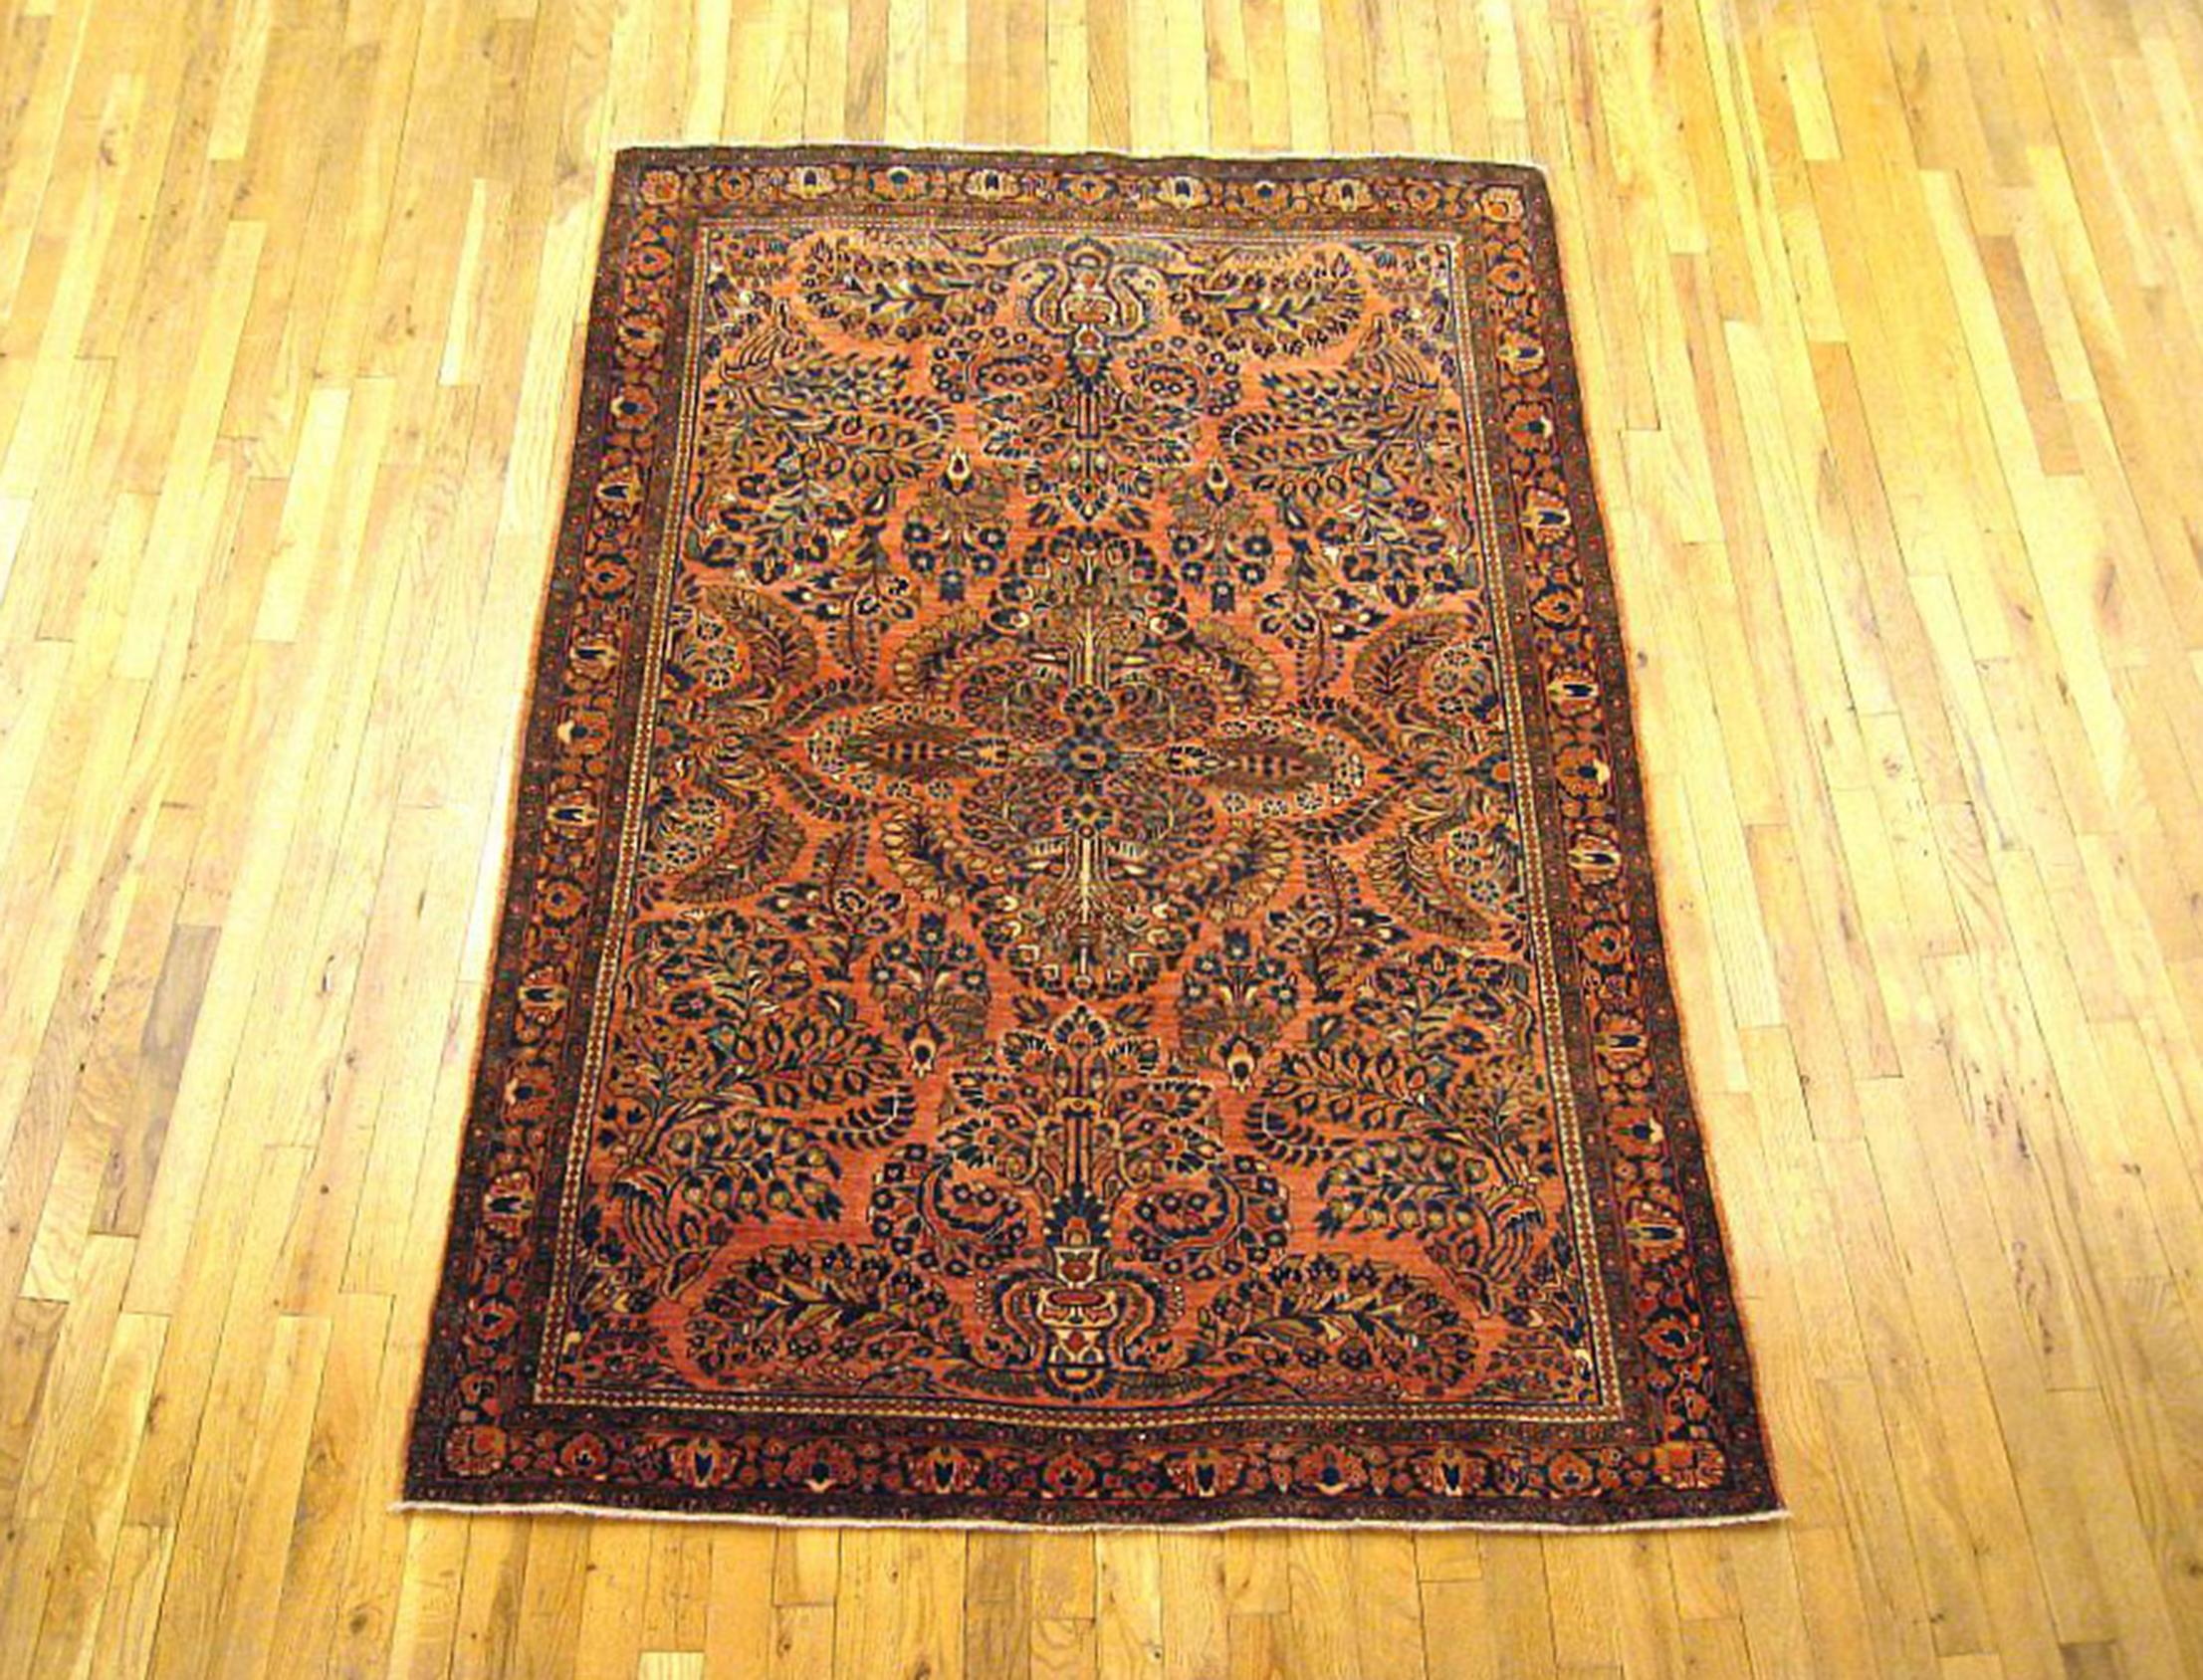 Antique Persian Sarouk Oriental Rug, circa 1920, Small size

An antique Persian Sarouk oriental rug, size 6'1